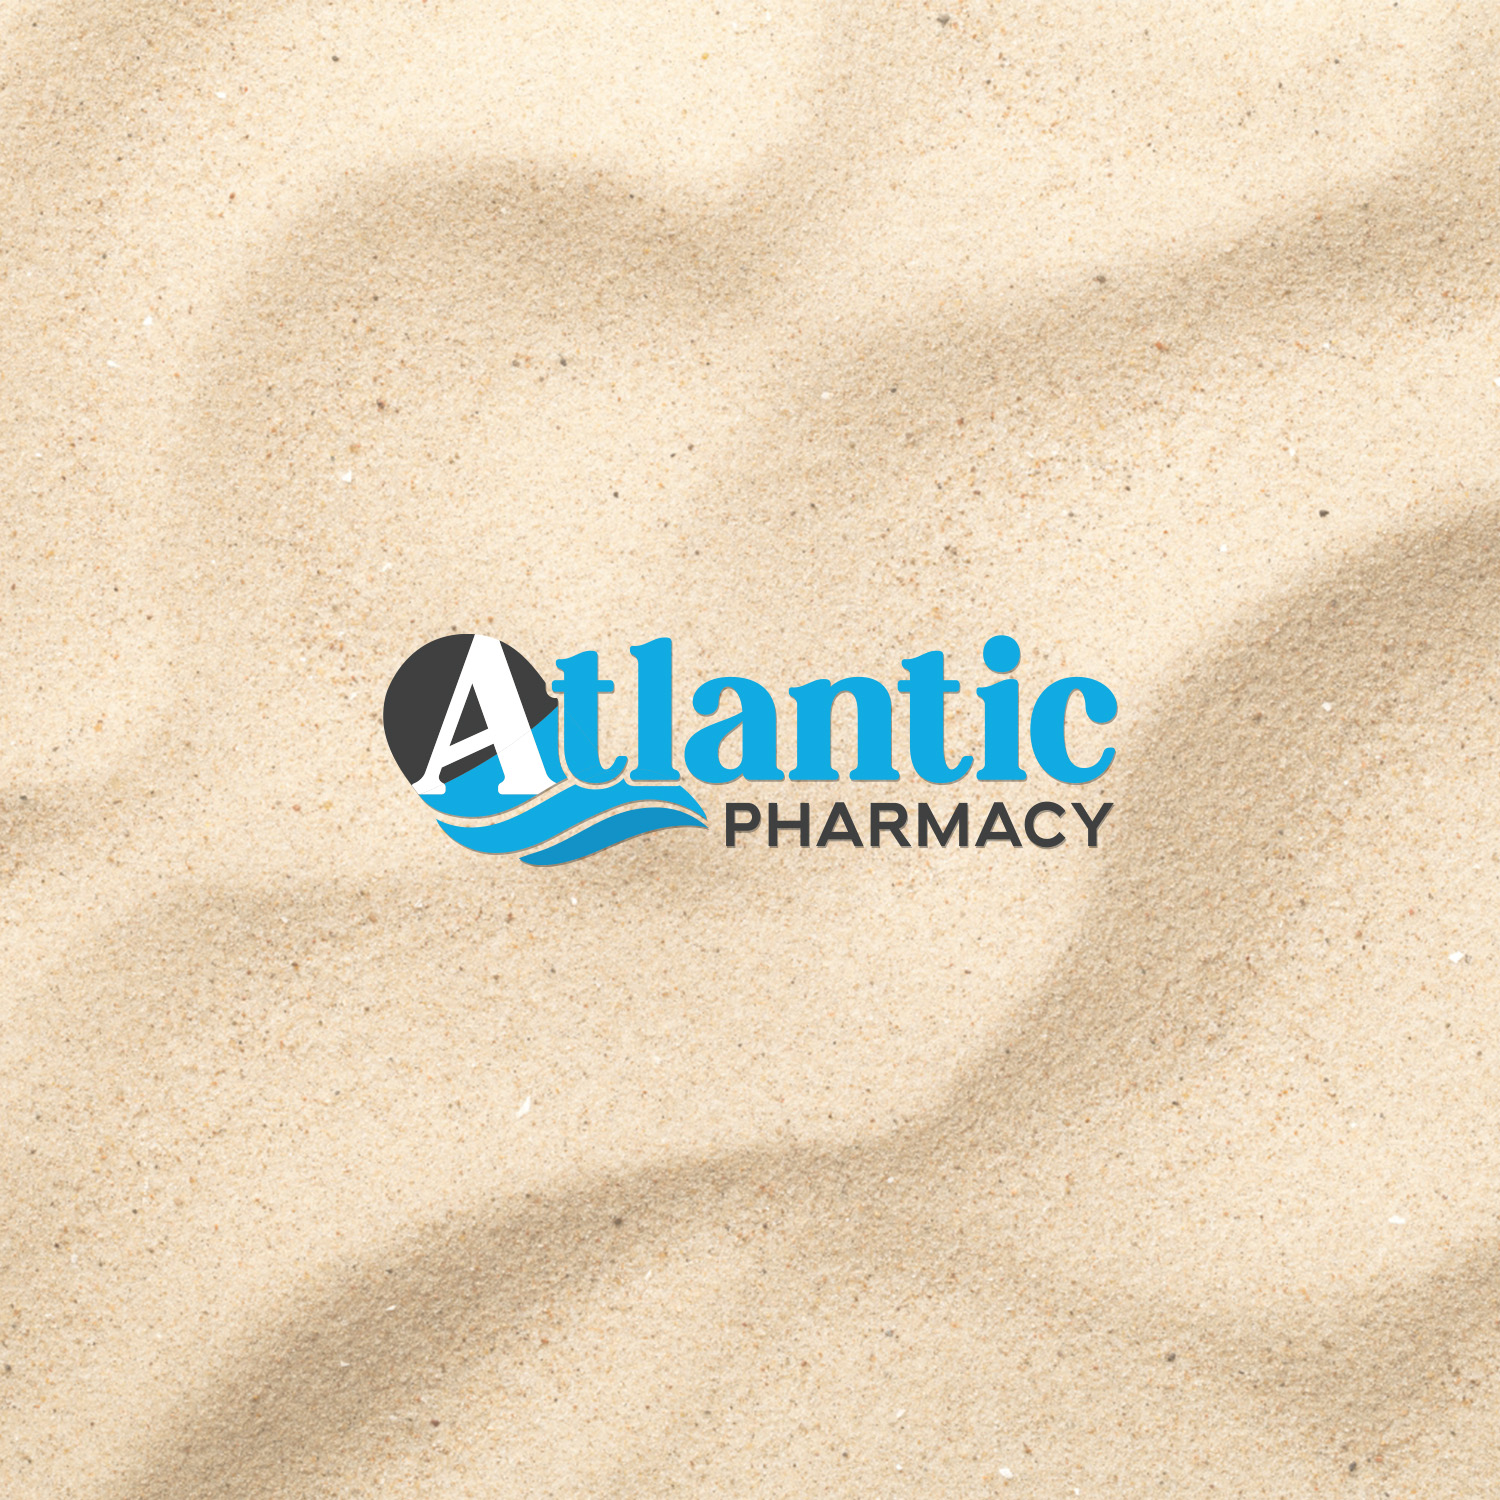 Atlantic Pharmacy logo by Caroline Wisner